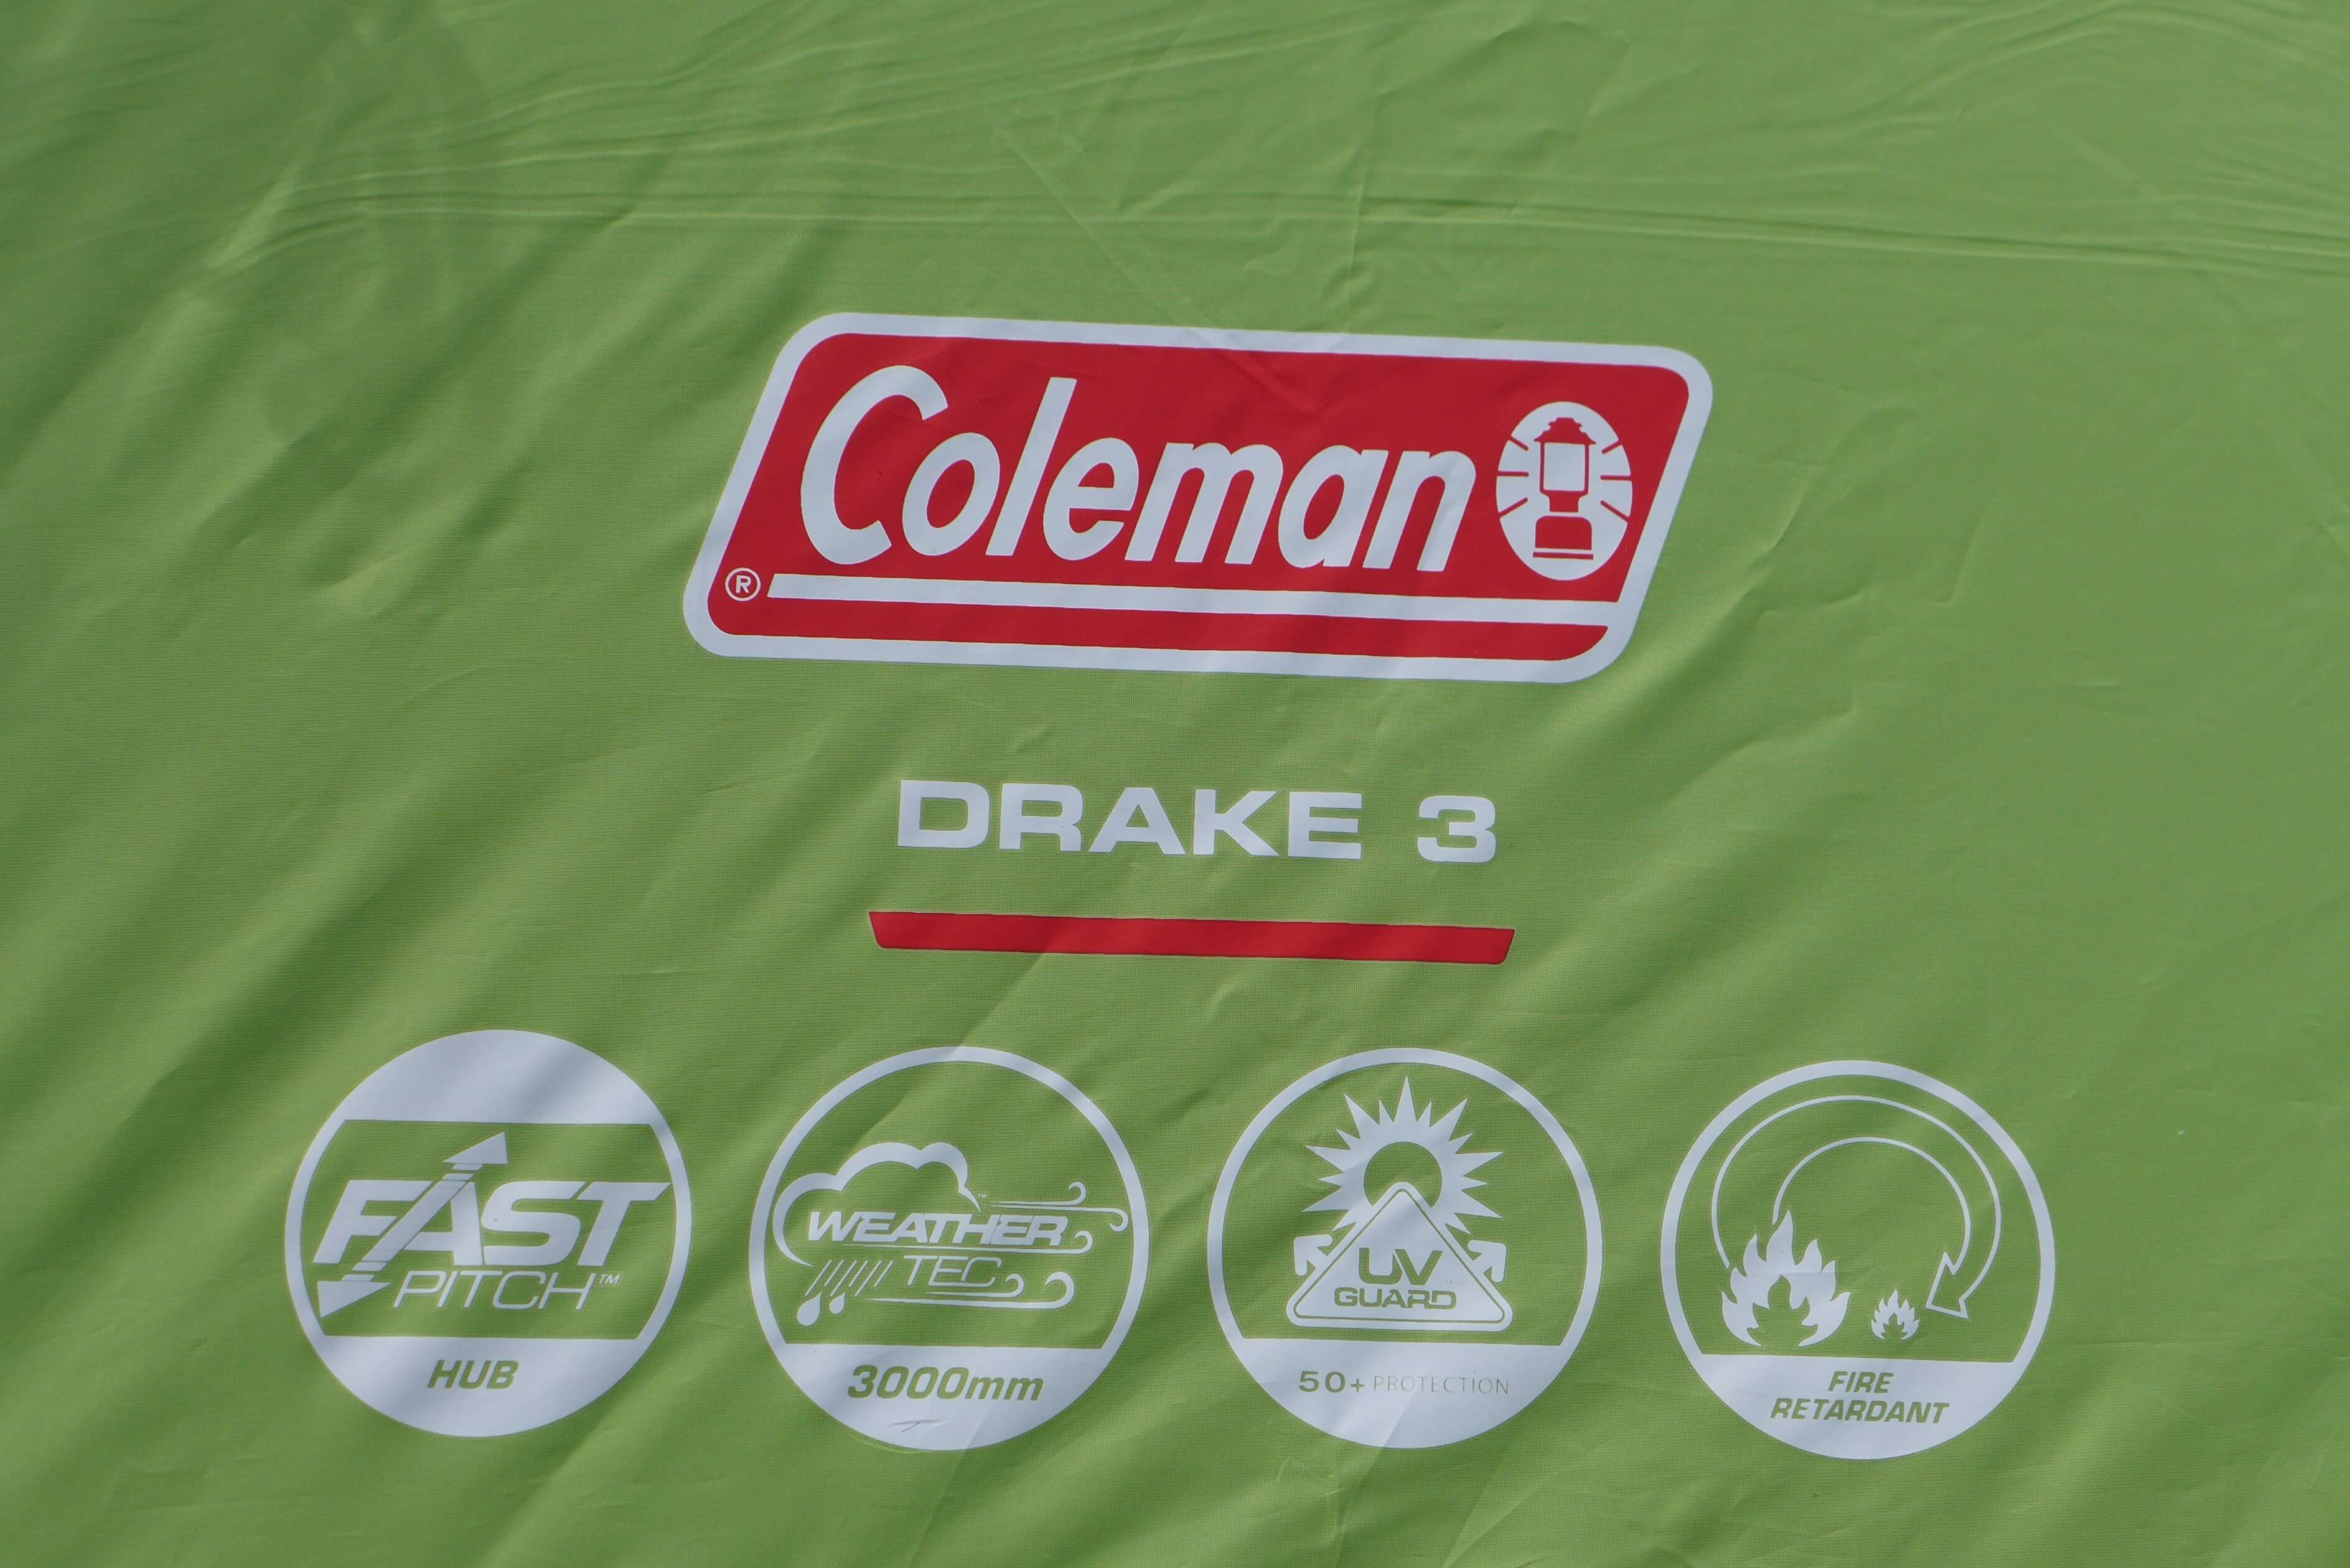 Výhody stanu Coleman Drake 3.